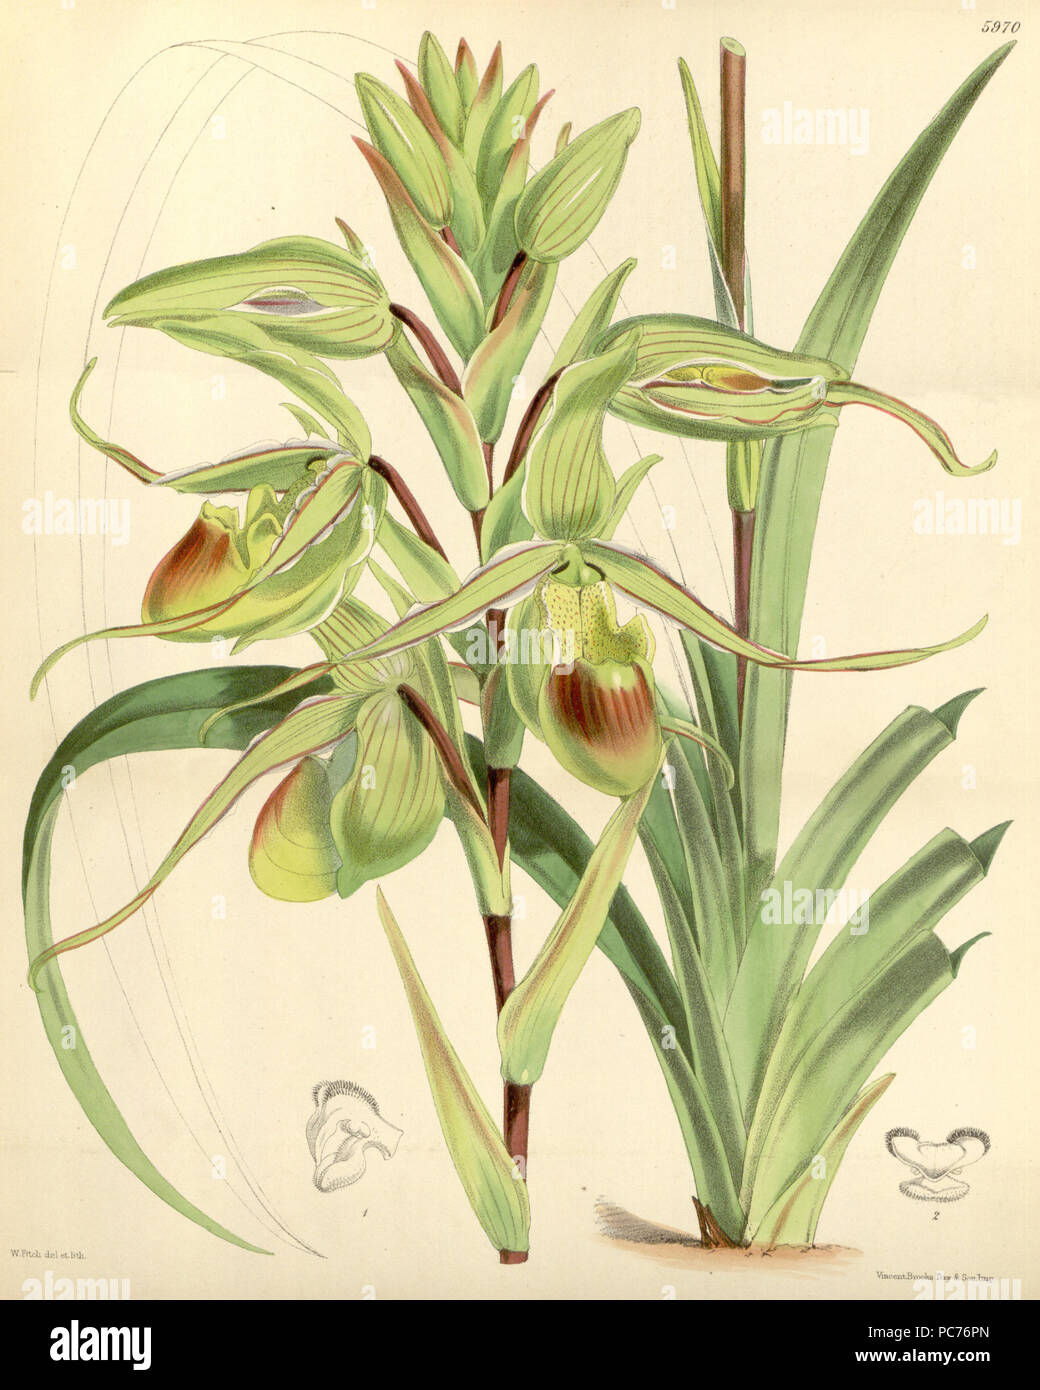 481 Phragmipedium longifolium (as Cypripedium longifolium) - Curtis' 98 (Ser. 3 no. 28) pl. 5970 (1872) Stock Photo